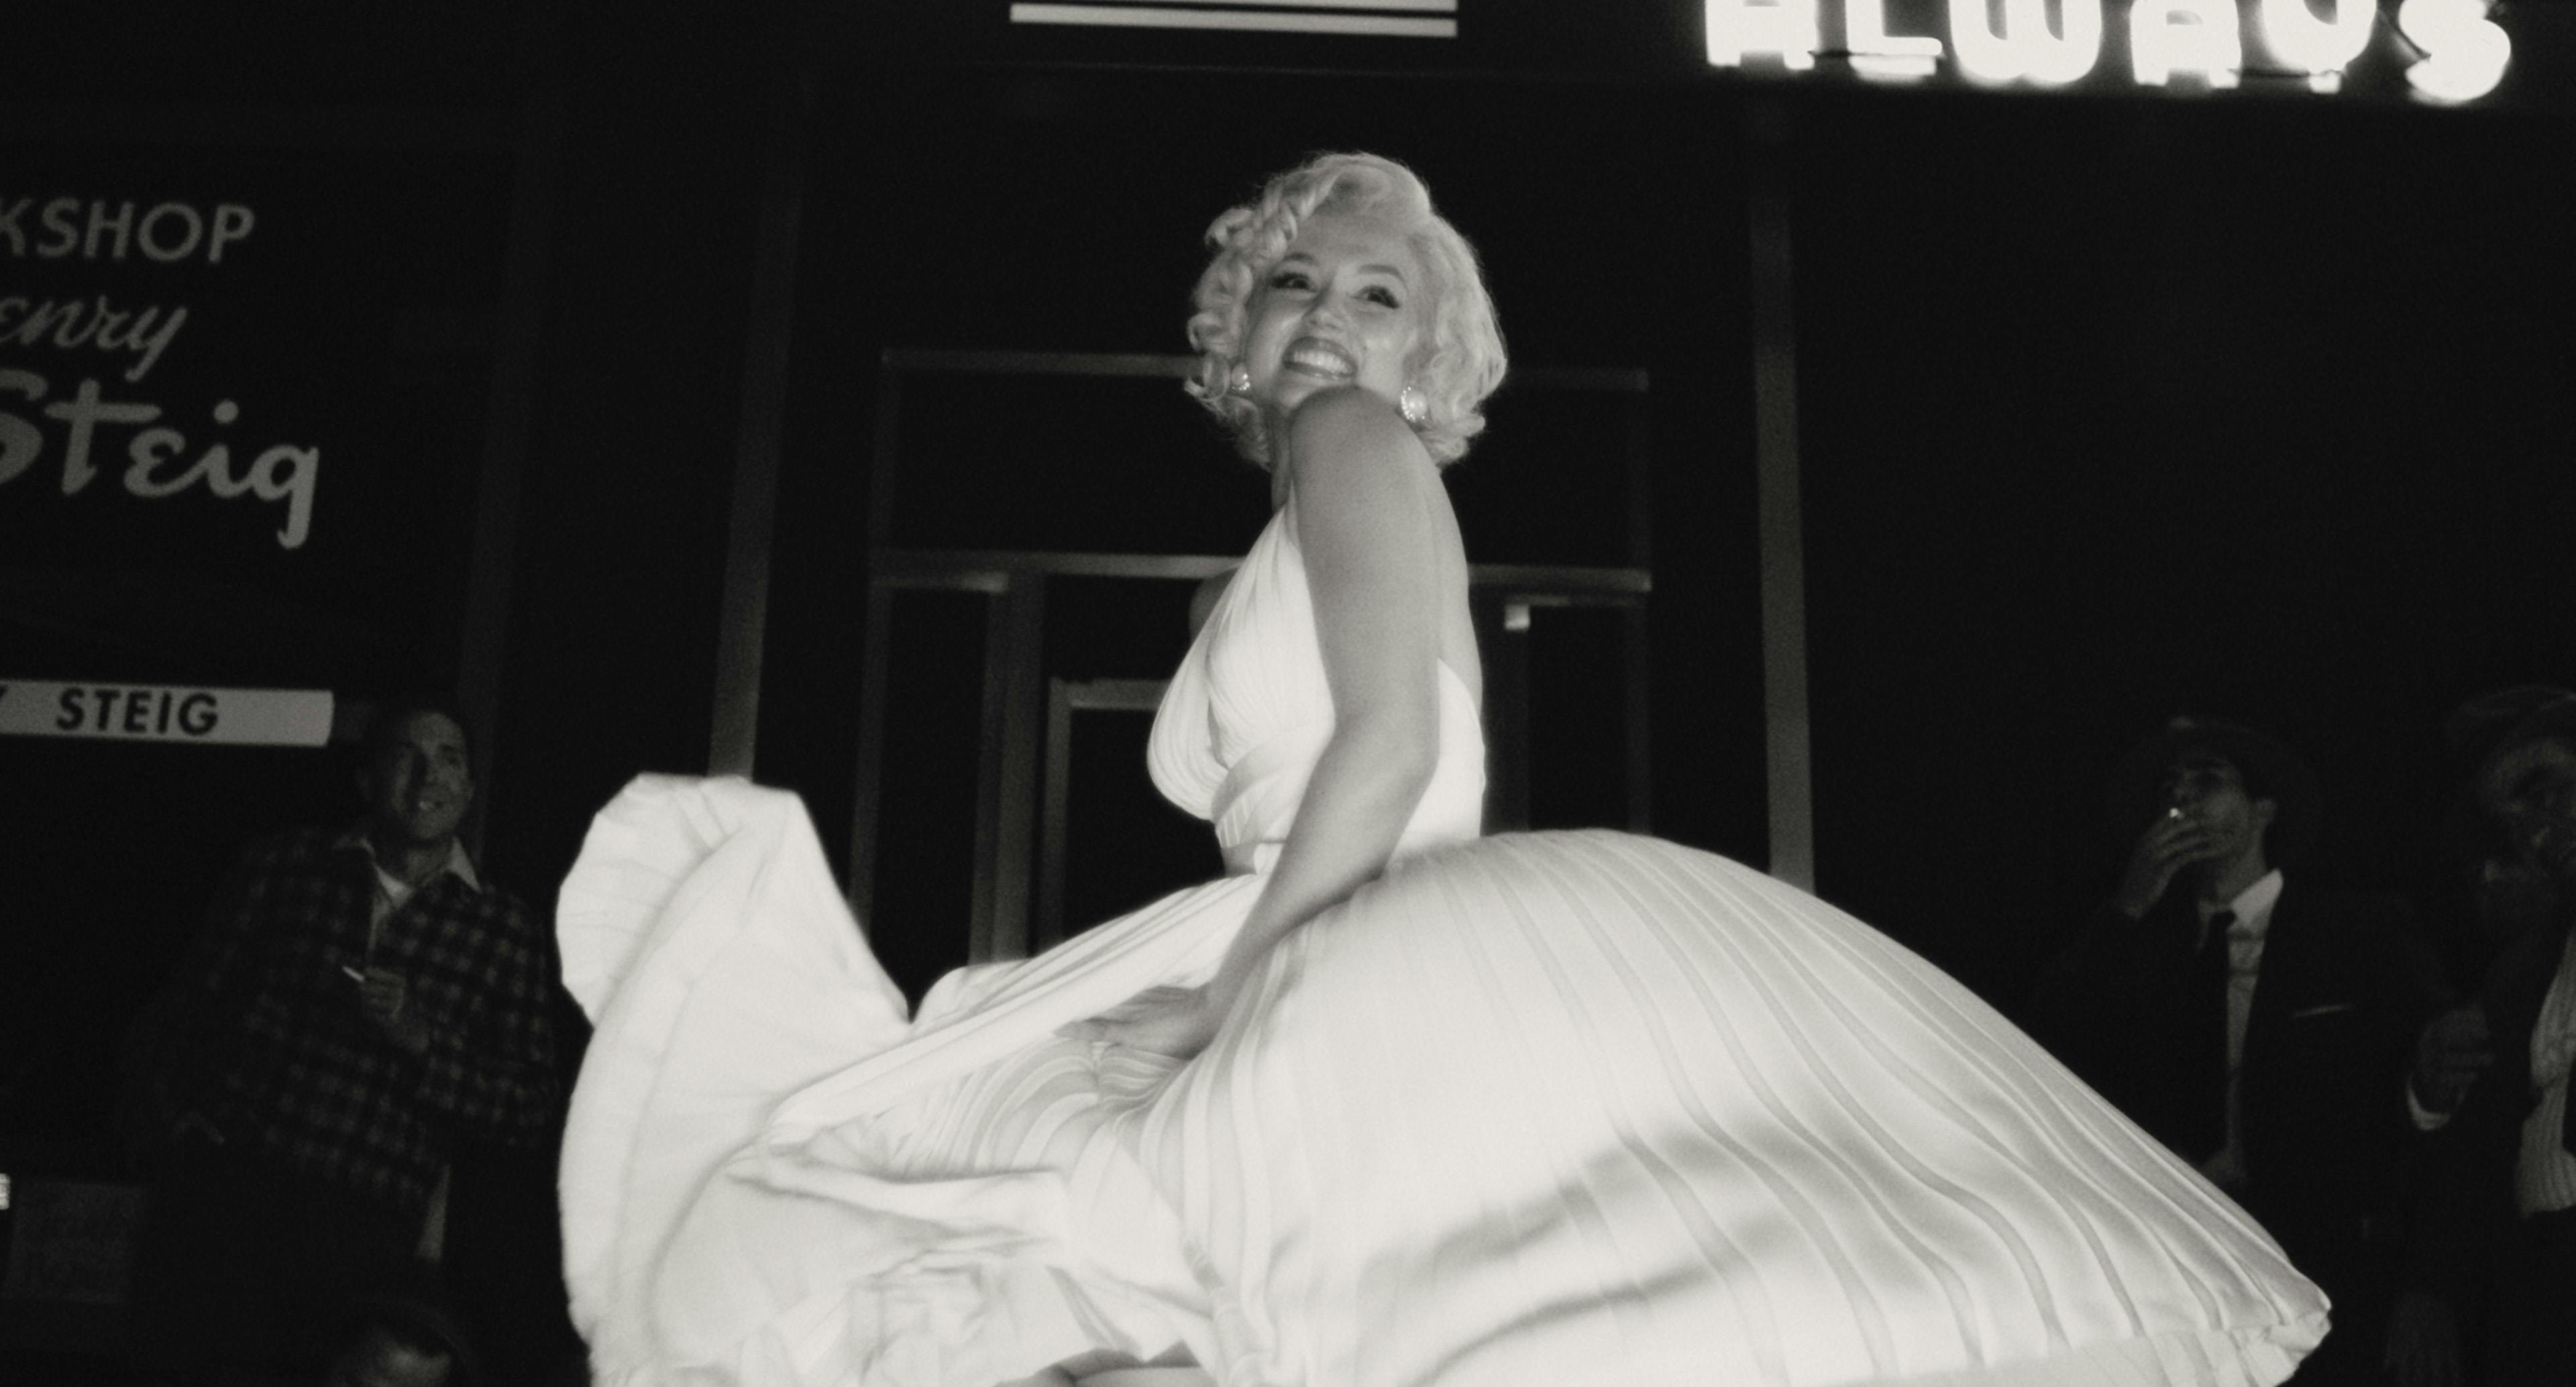 Alle de ikoniske øjeblikke fra Marilyn Monroes karriere forventes at være med i "Blonde", der har premiere på Netflix den 28. august.&nbsp;

Her er øjeblikket fra indspilningerne til "The Seven Year Itch" gengivet.&nbsp;
